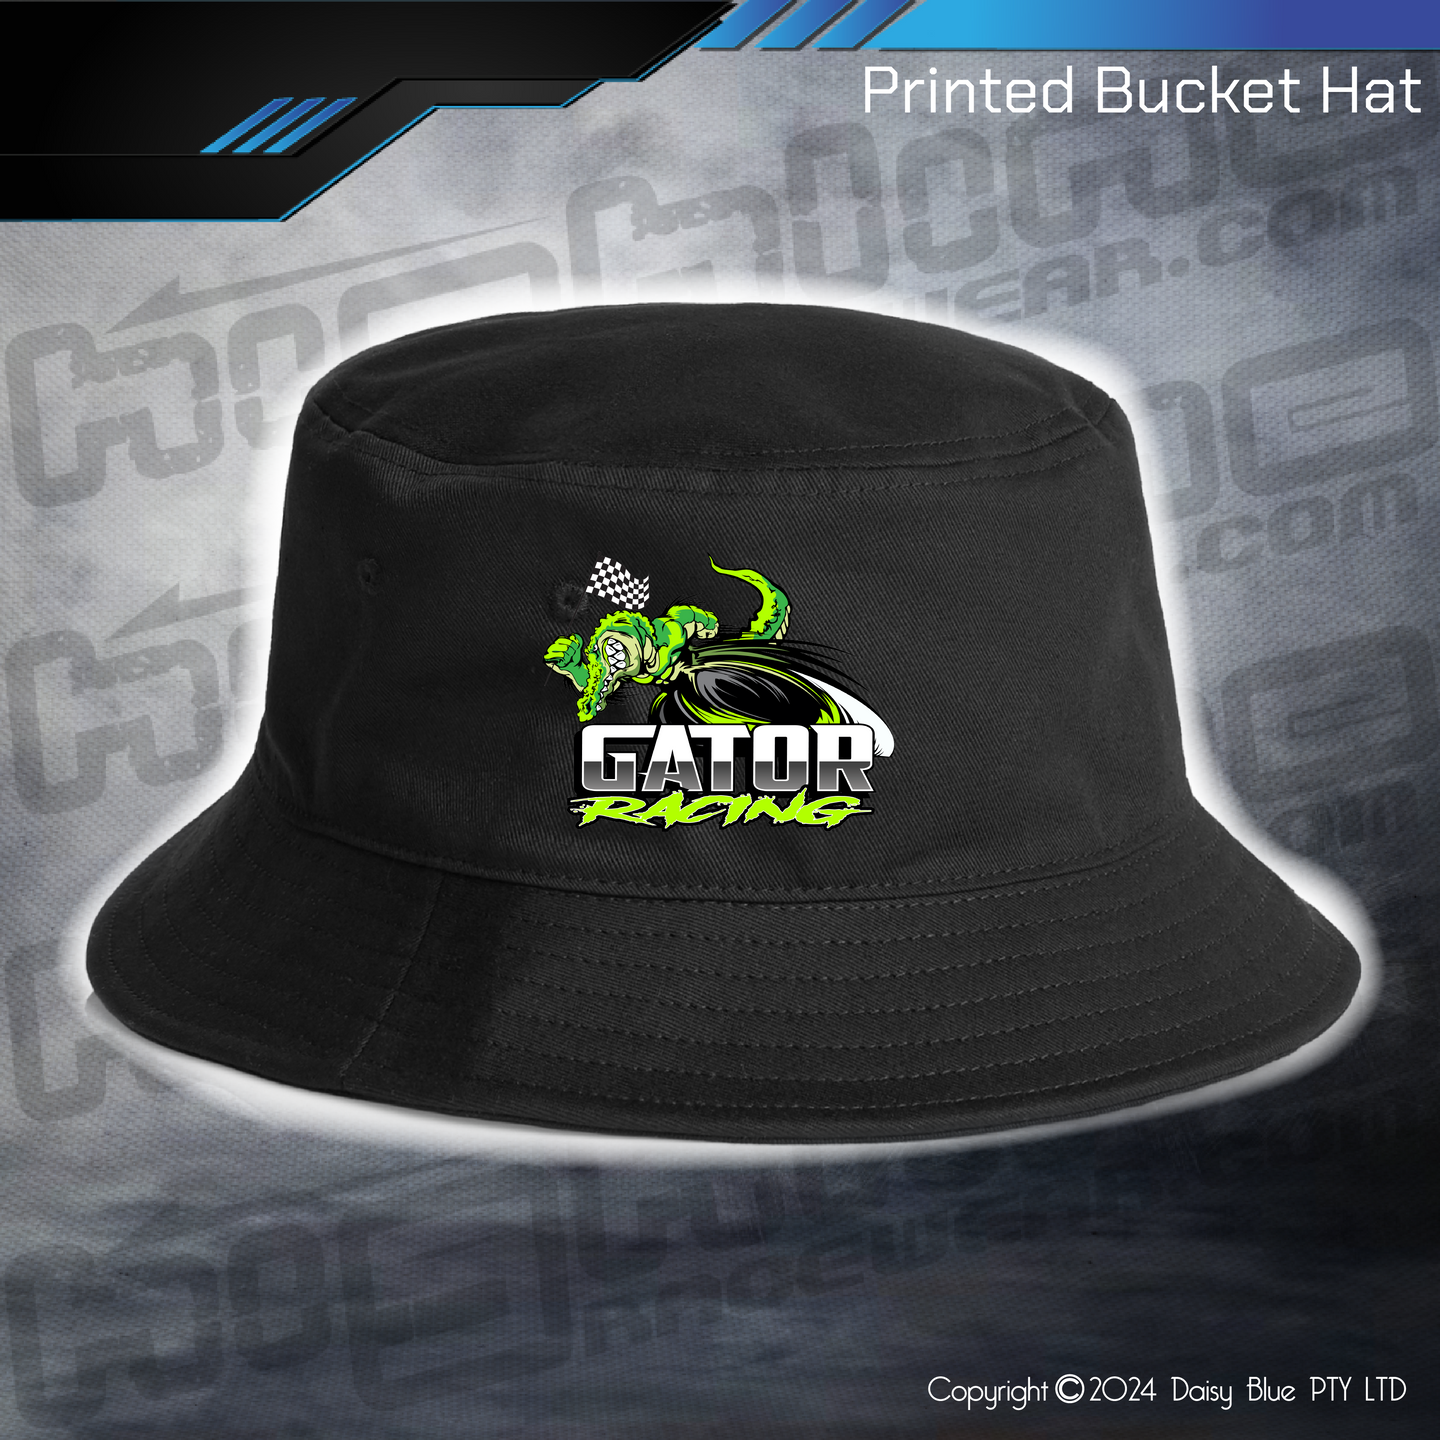 Printed Bucket Hat - Nate Roycroft